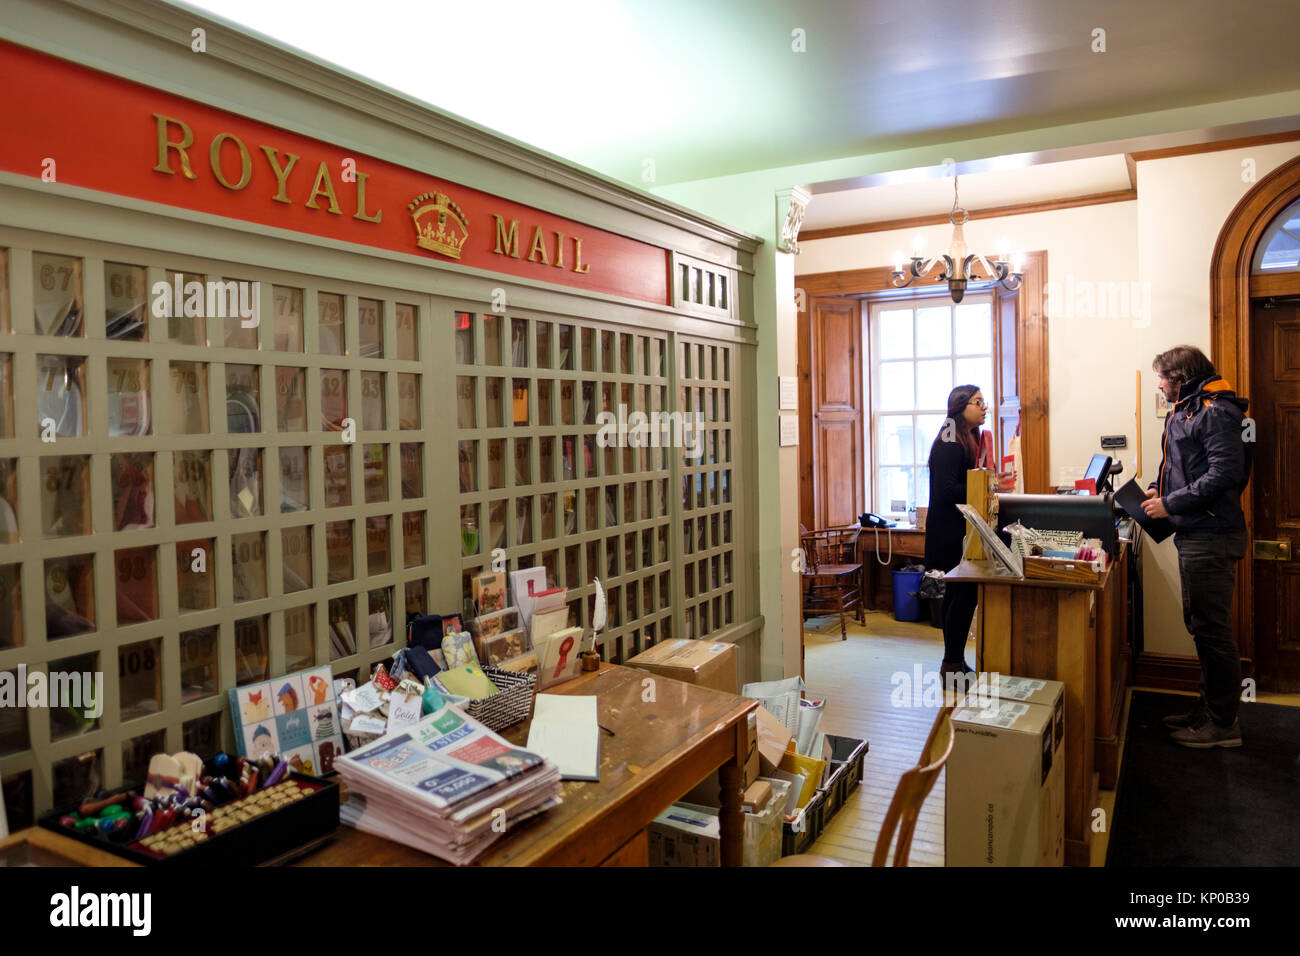 Le premier bureau de poste de Toronto, 1834 un bureau de poste dans le centre-ville de Toronto, qui était auparavant un ministère de la British Royal Mail au Canada. Banque D'Images